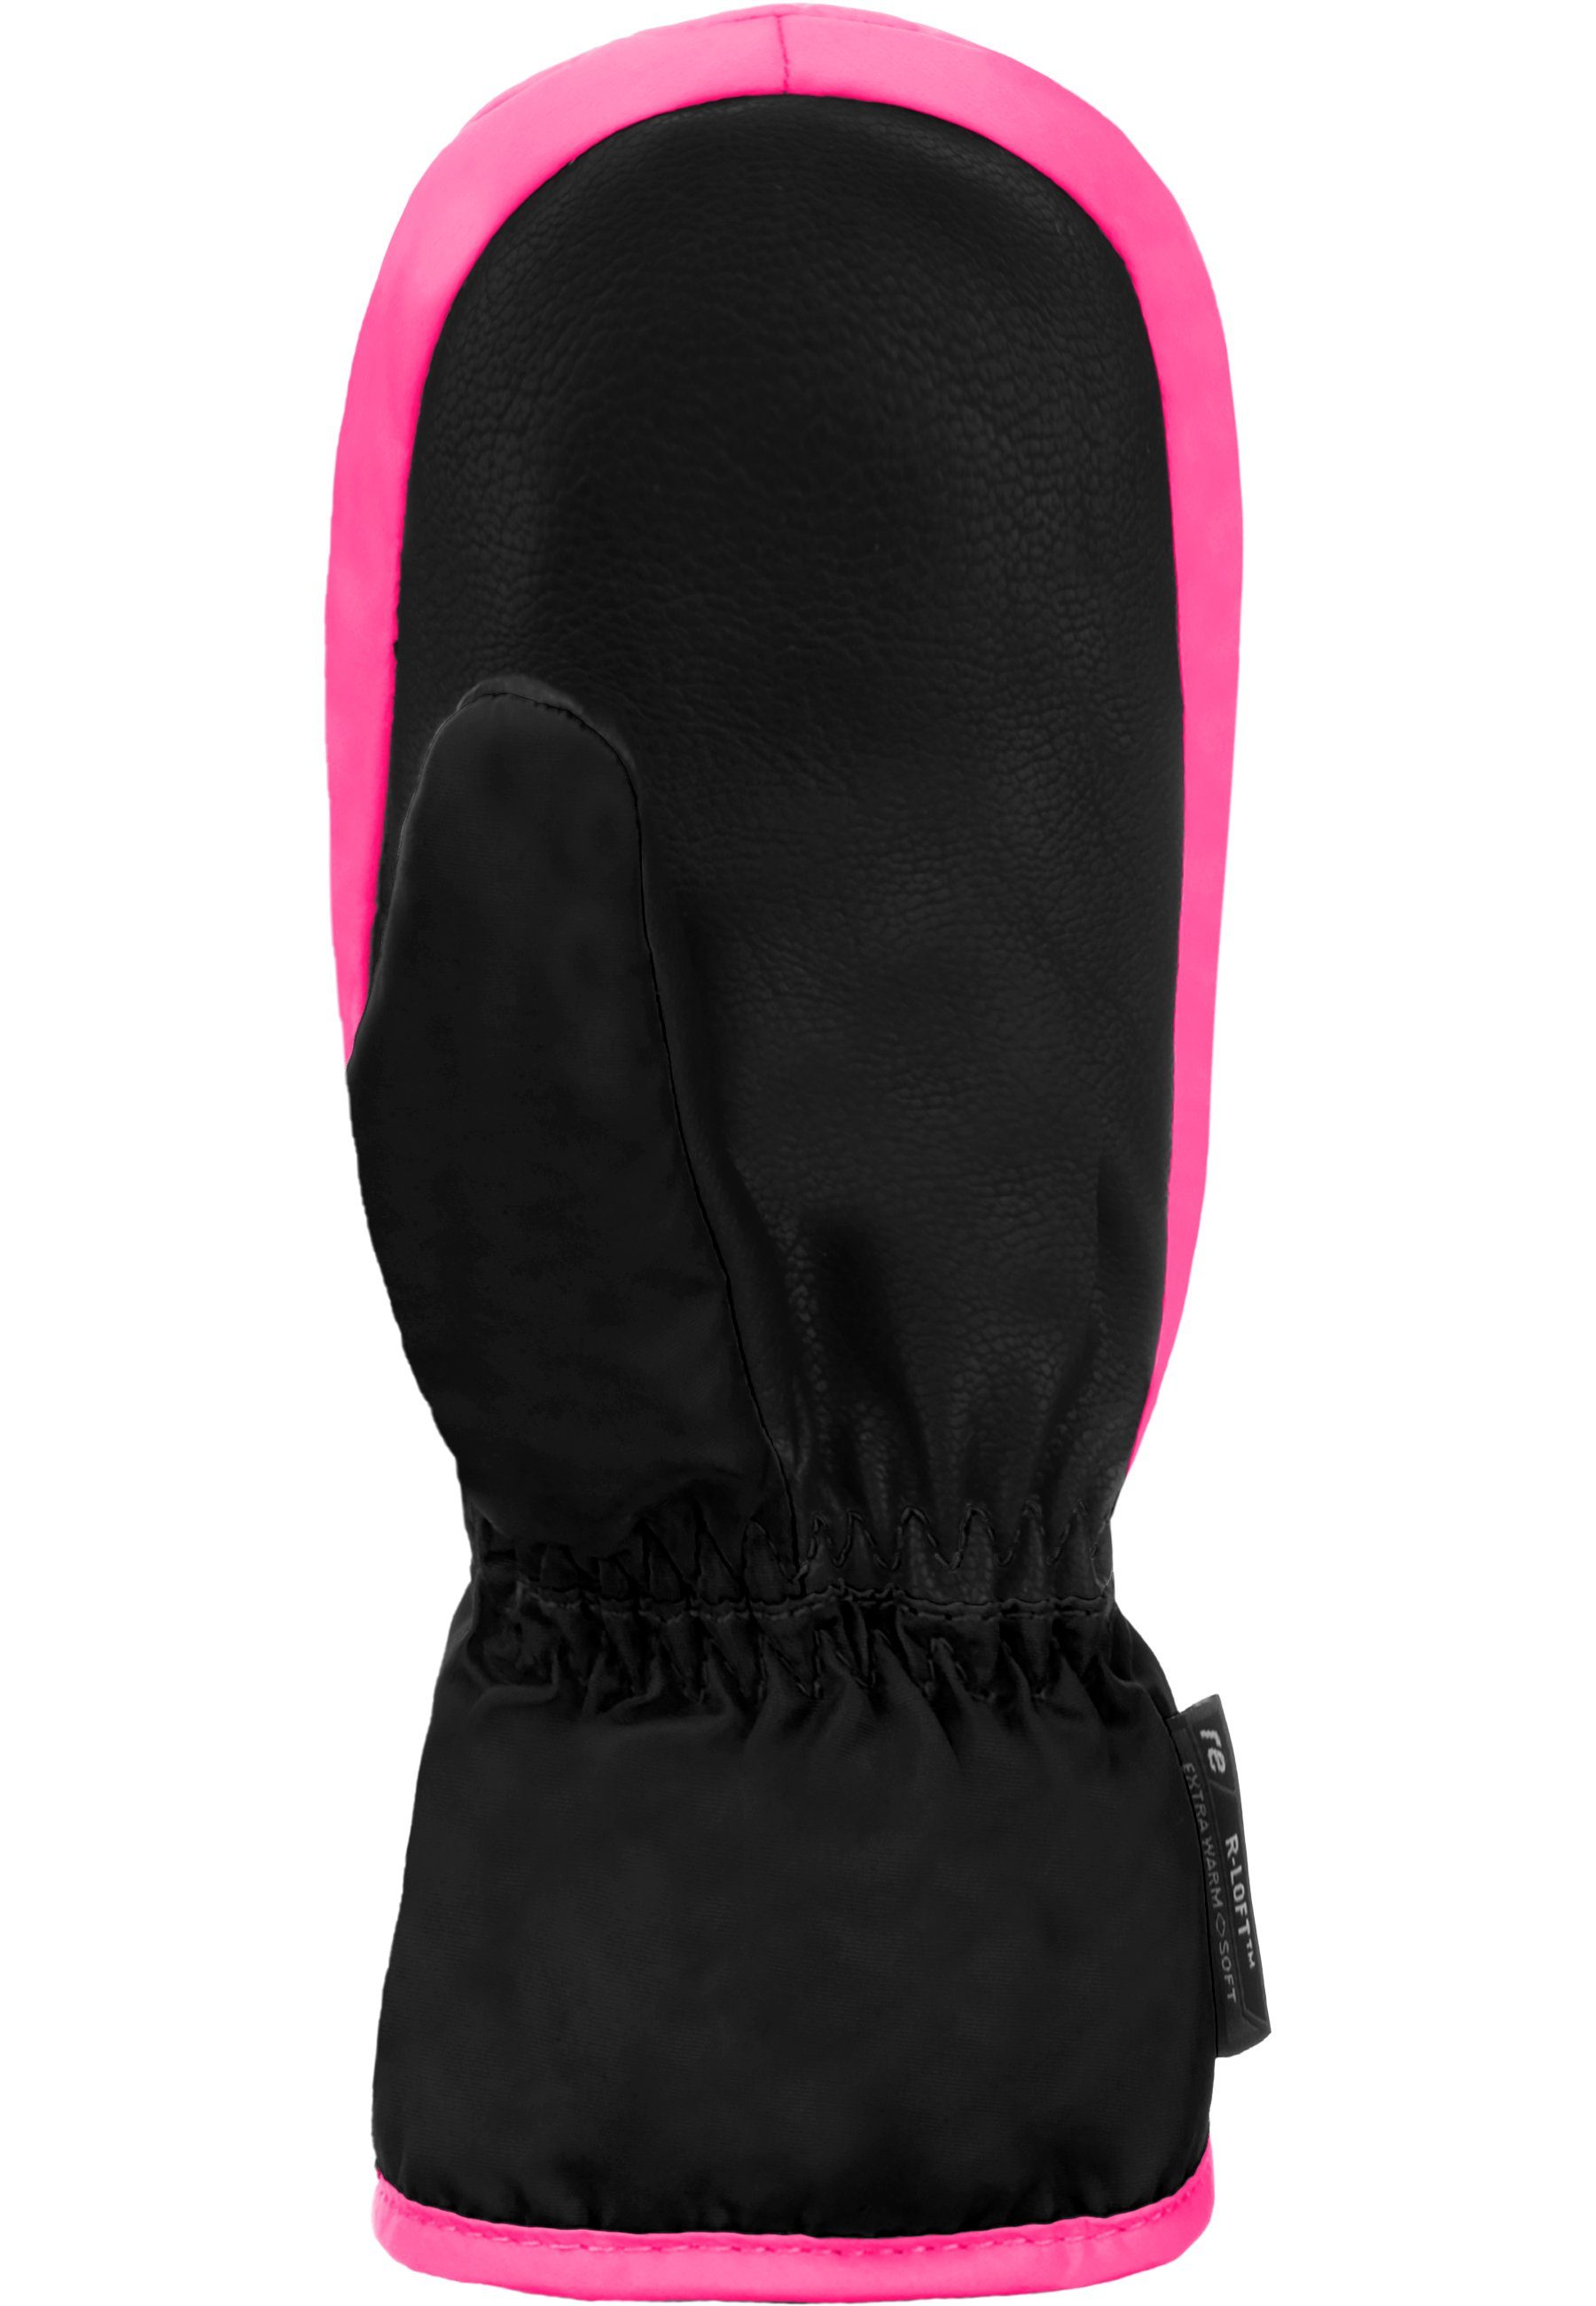 Fäustlinge Reusch Ben langem Mitten Reißverschluss pink-schwarz mit extra